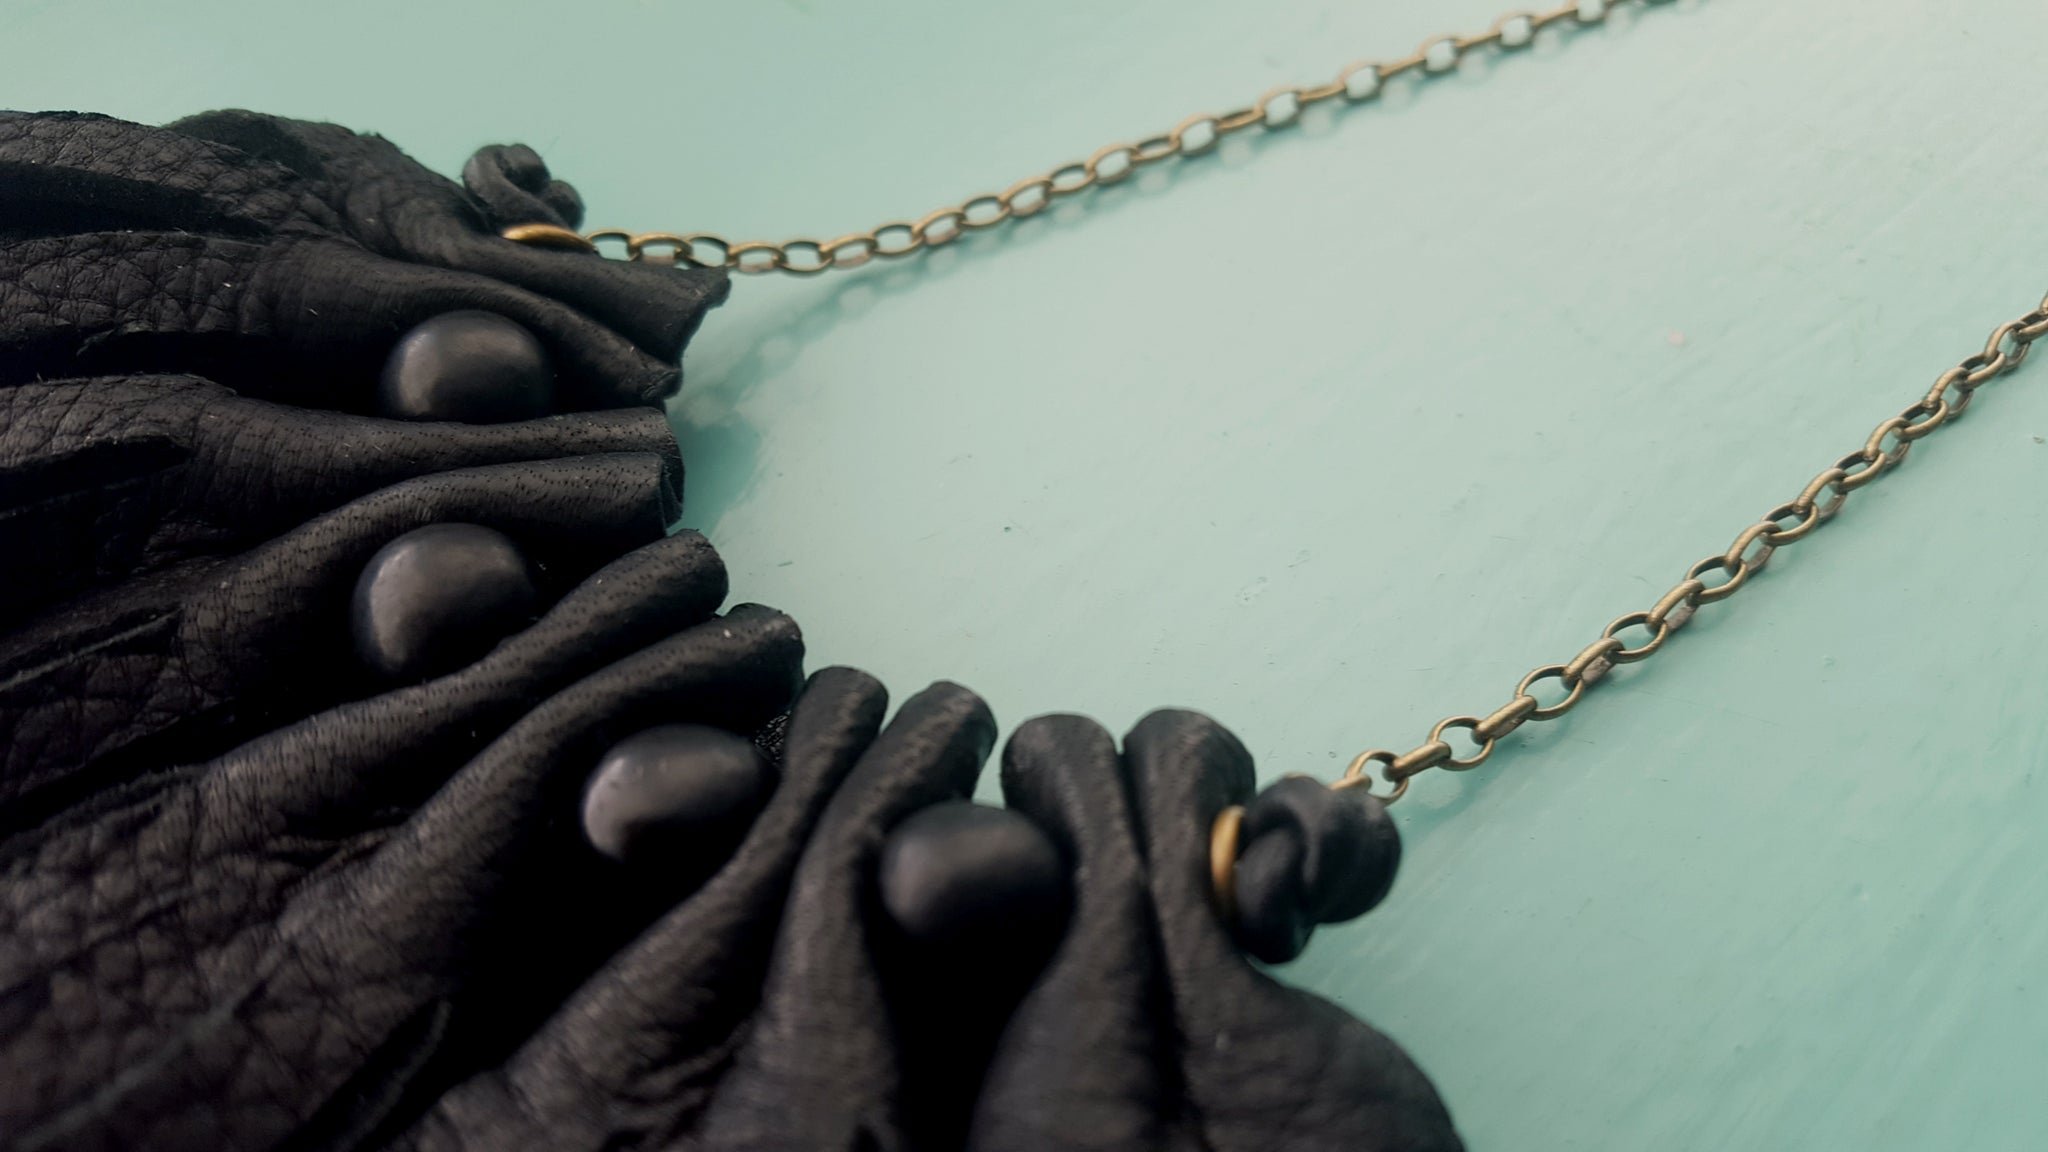 Badu Fringe Leather Necklace | African Mala & South American Acai Beads